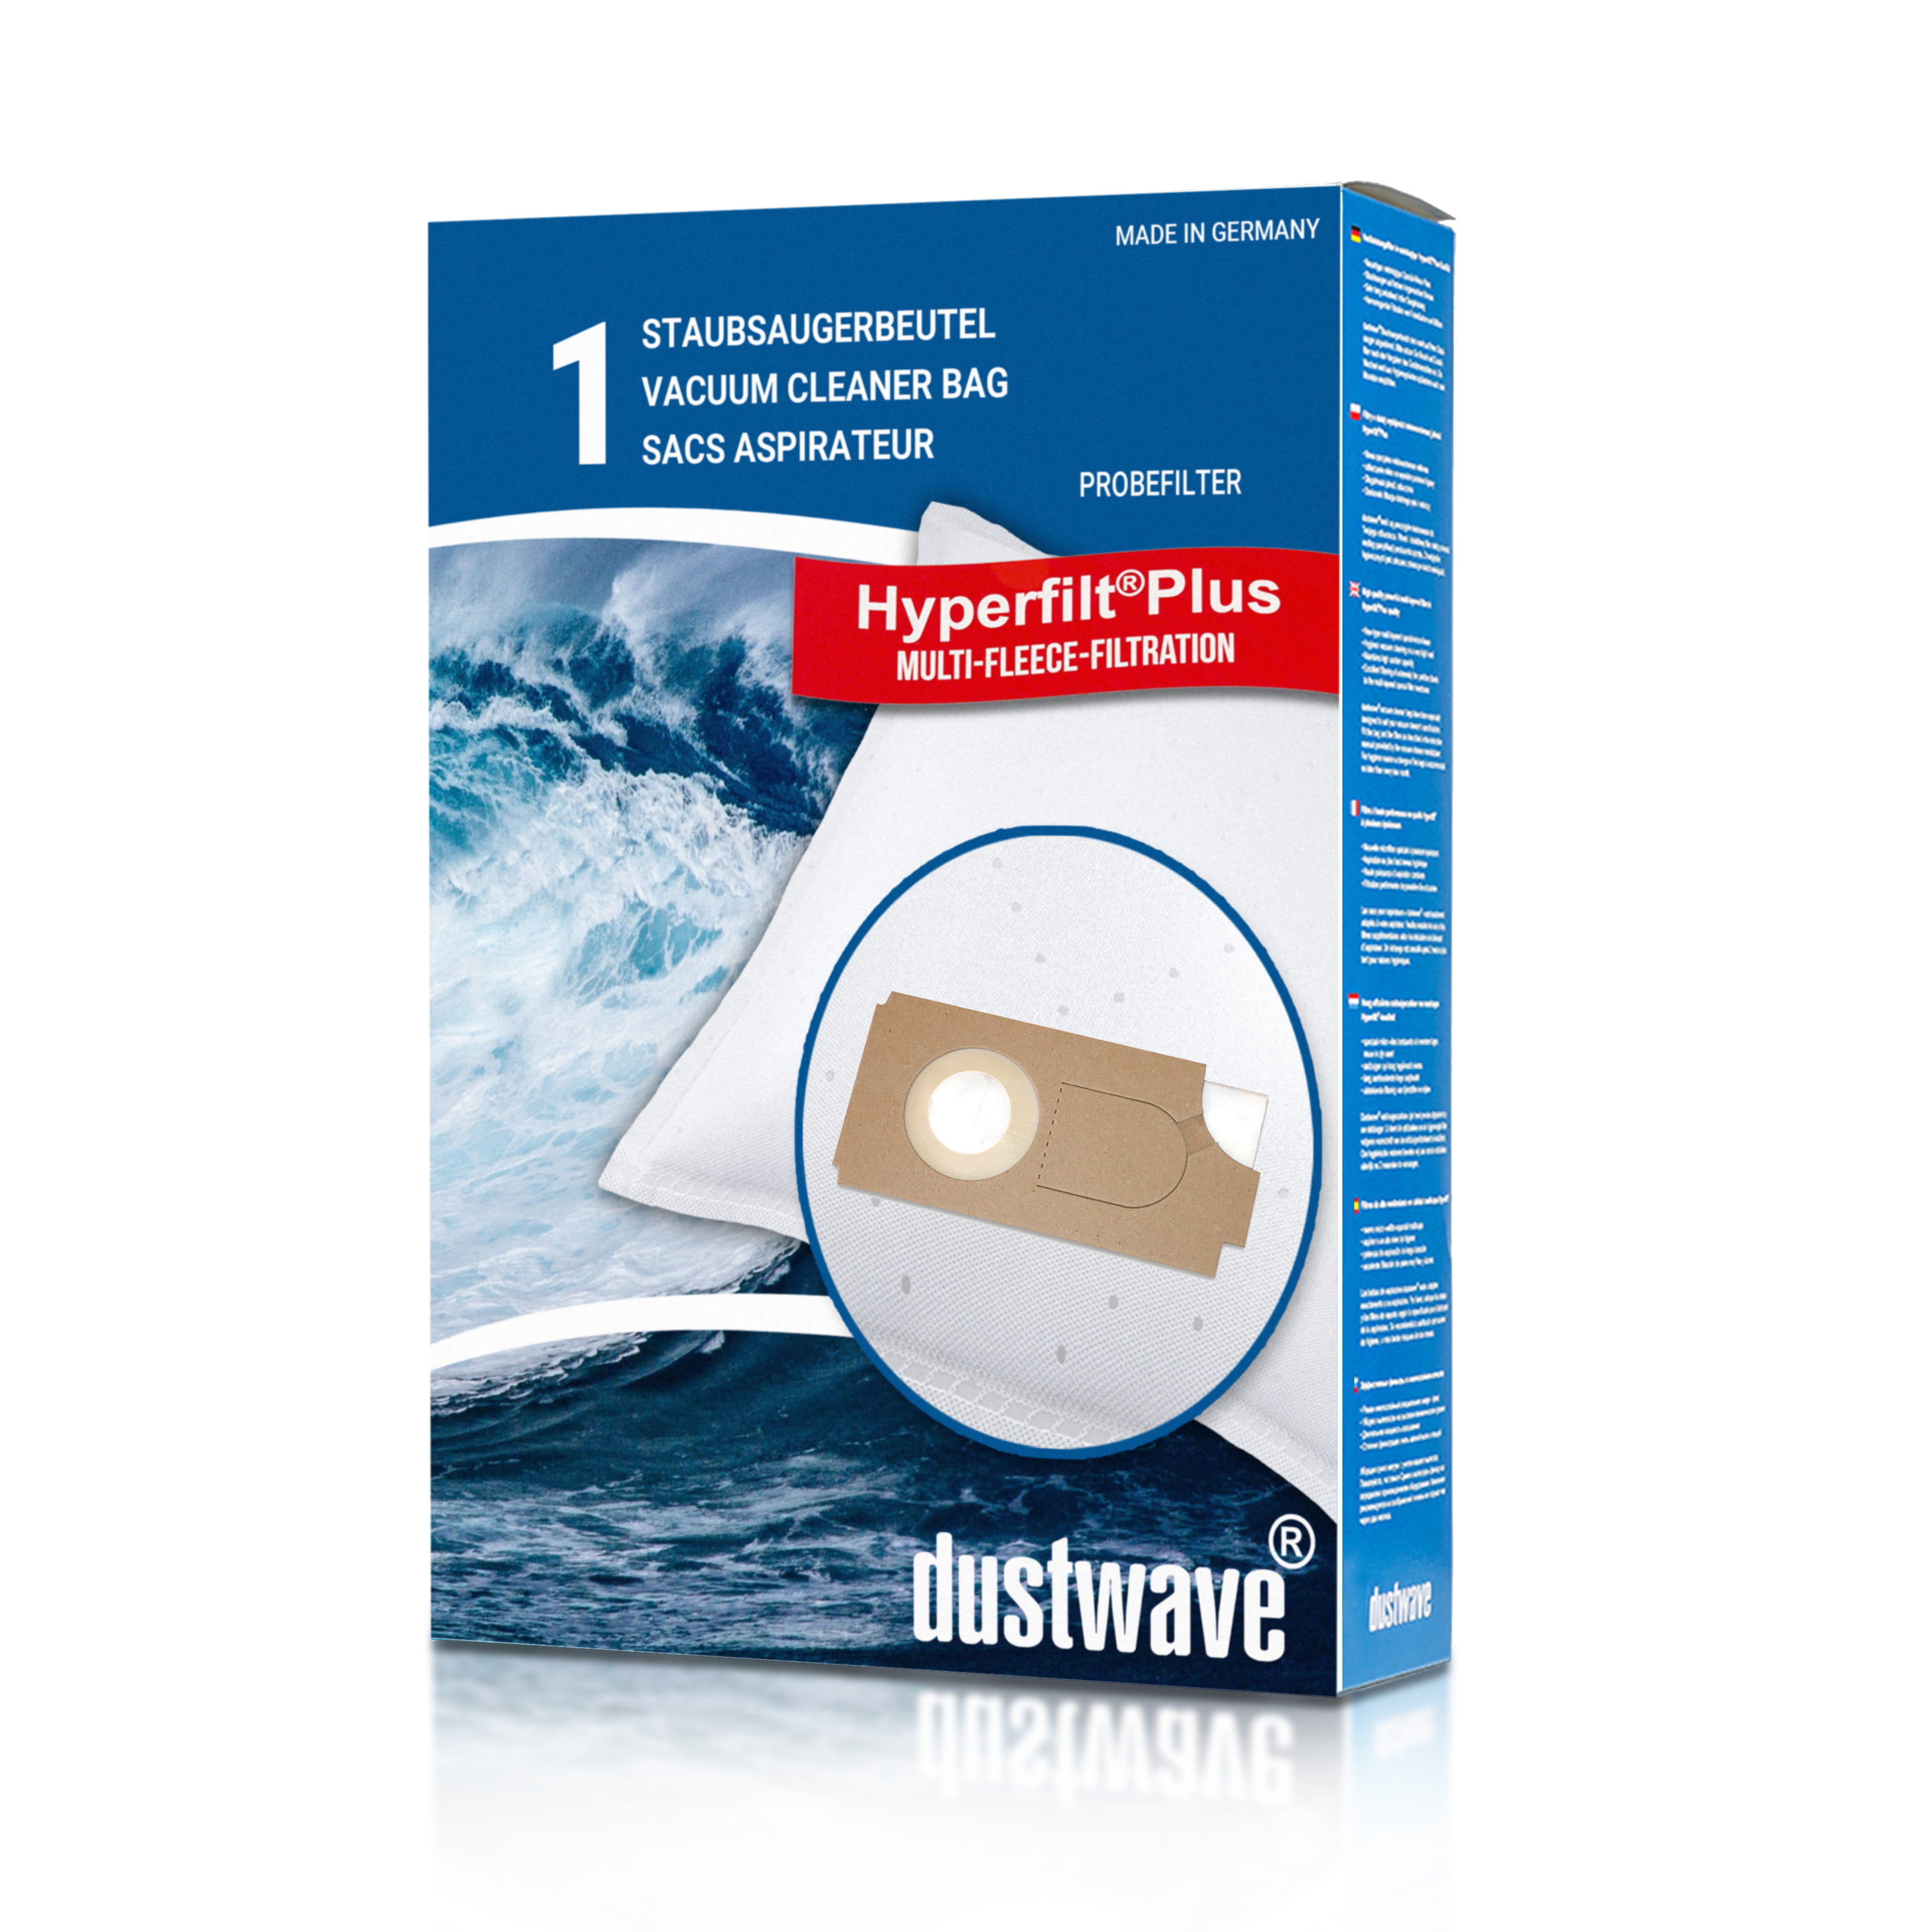 Dustwave® 1 Staubsaugerbeutel für Columbus 202 084 00 / 20208400 - hocheffizient mit Hygieneverschluss - Made in Germany